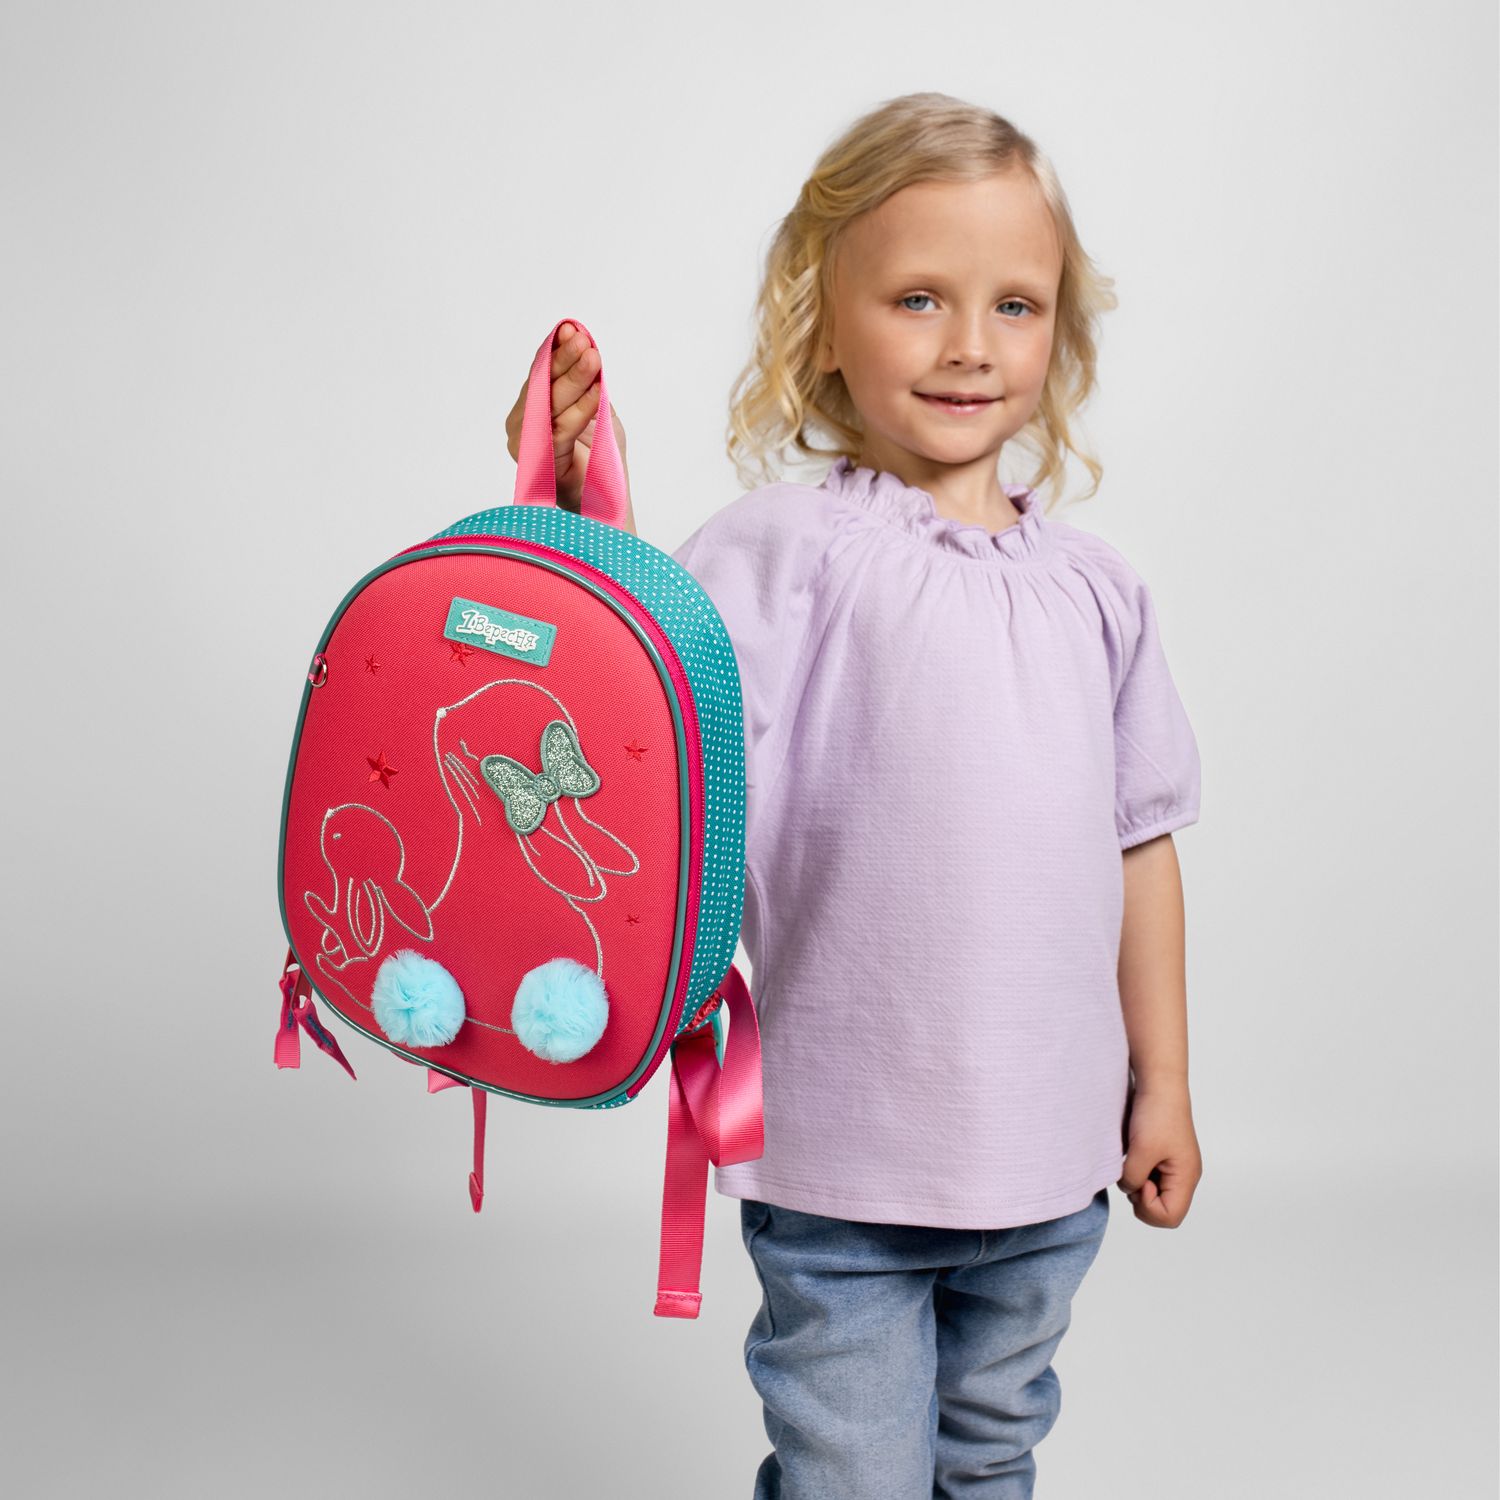 Рюкзак дитячий 1 Вересня K-43 Bunny, розовый с бирюзовым (552552) - фото 4